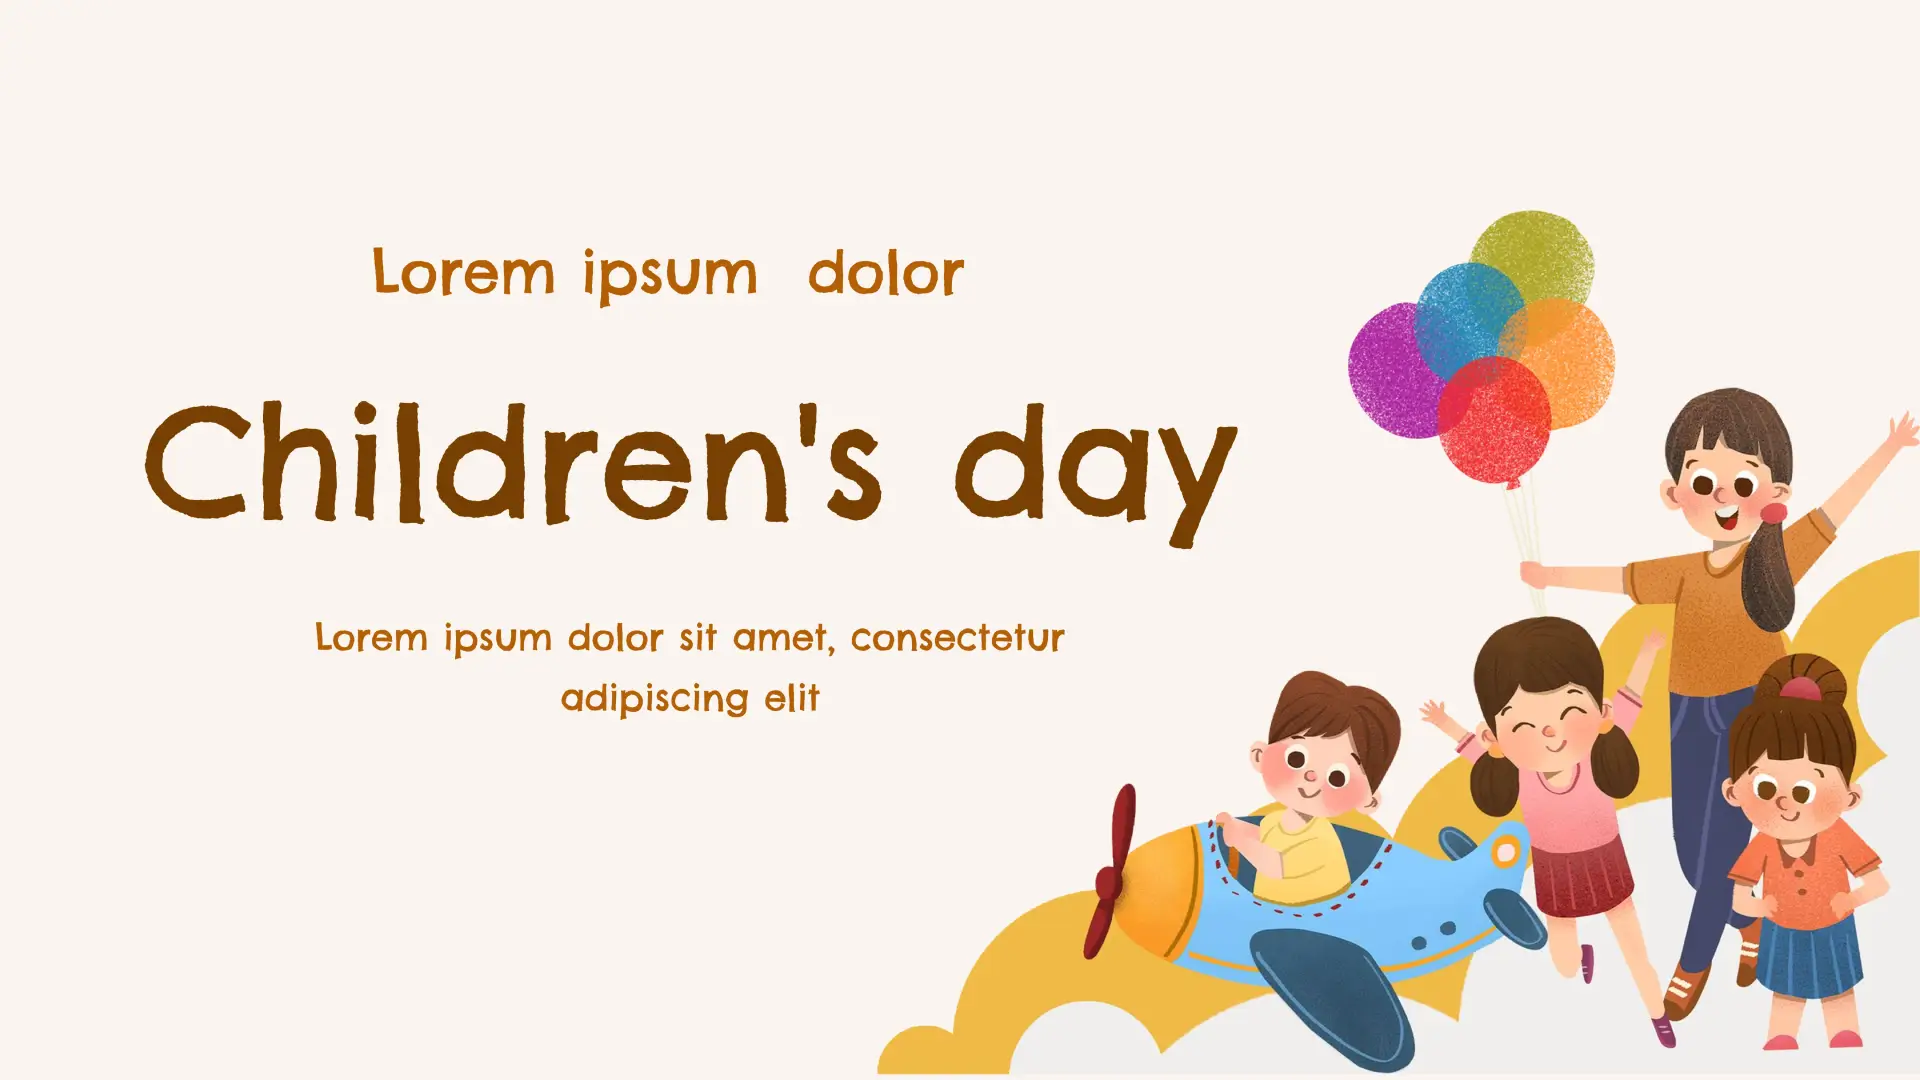 Children's day Template for Google Slides